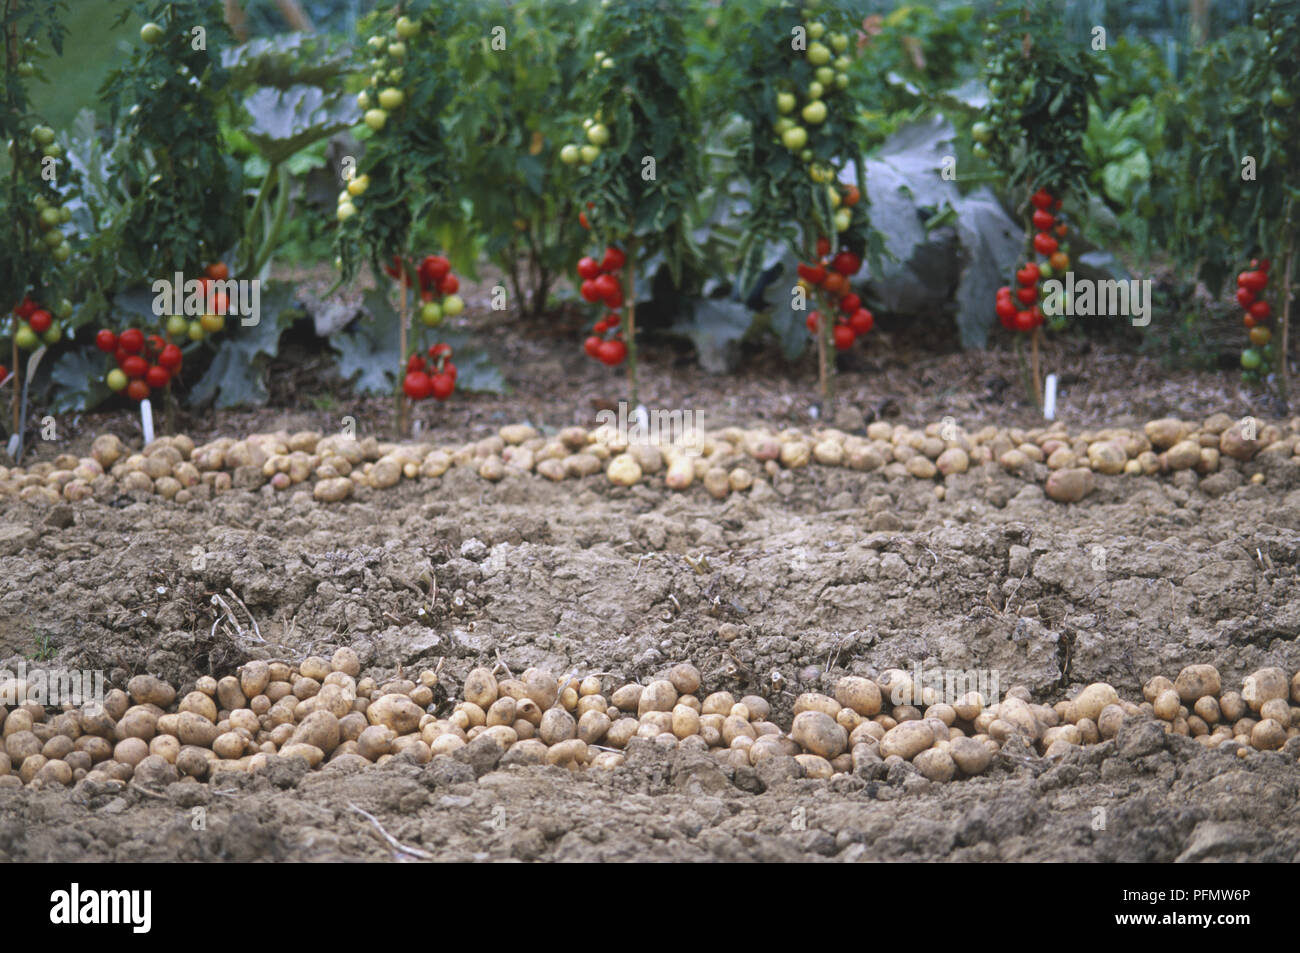 Linee di patate nel suolo in primo piano, fila di pomodoro rosso piante che crescono in background. Foto Stock